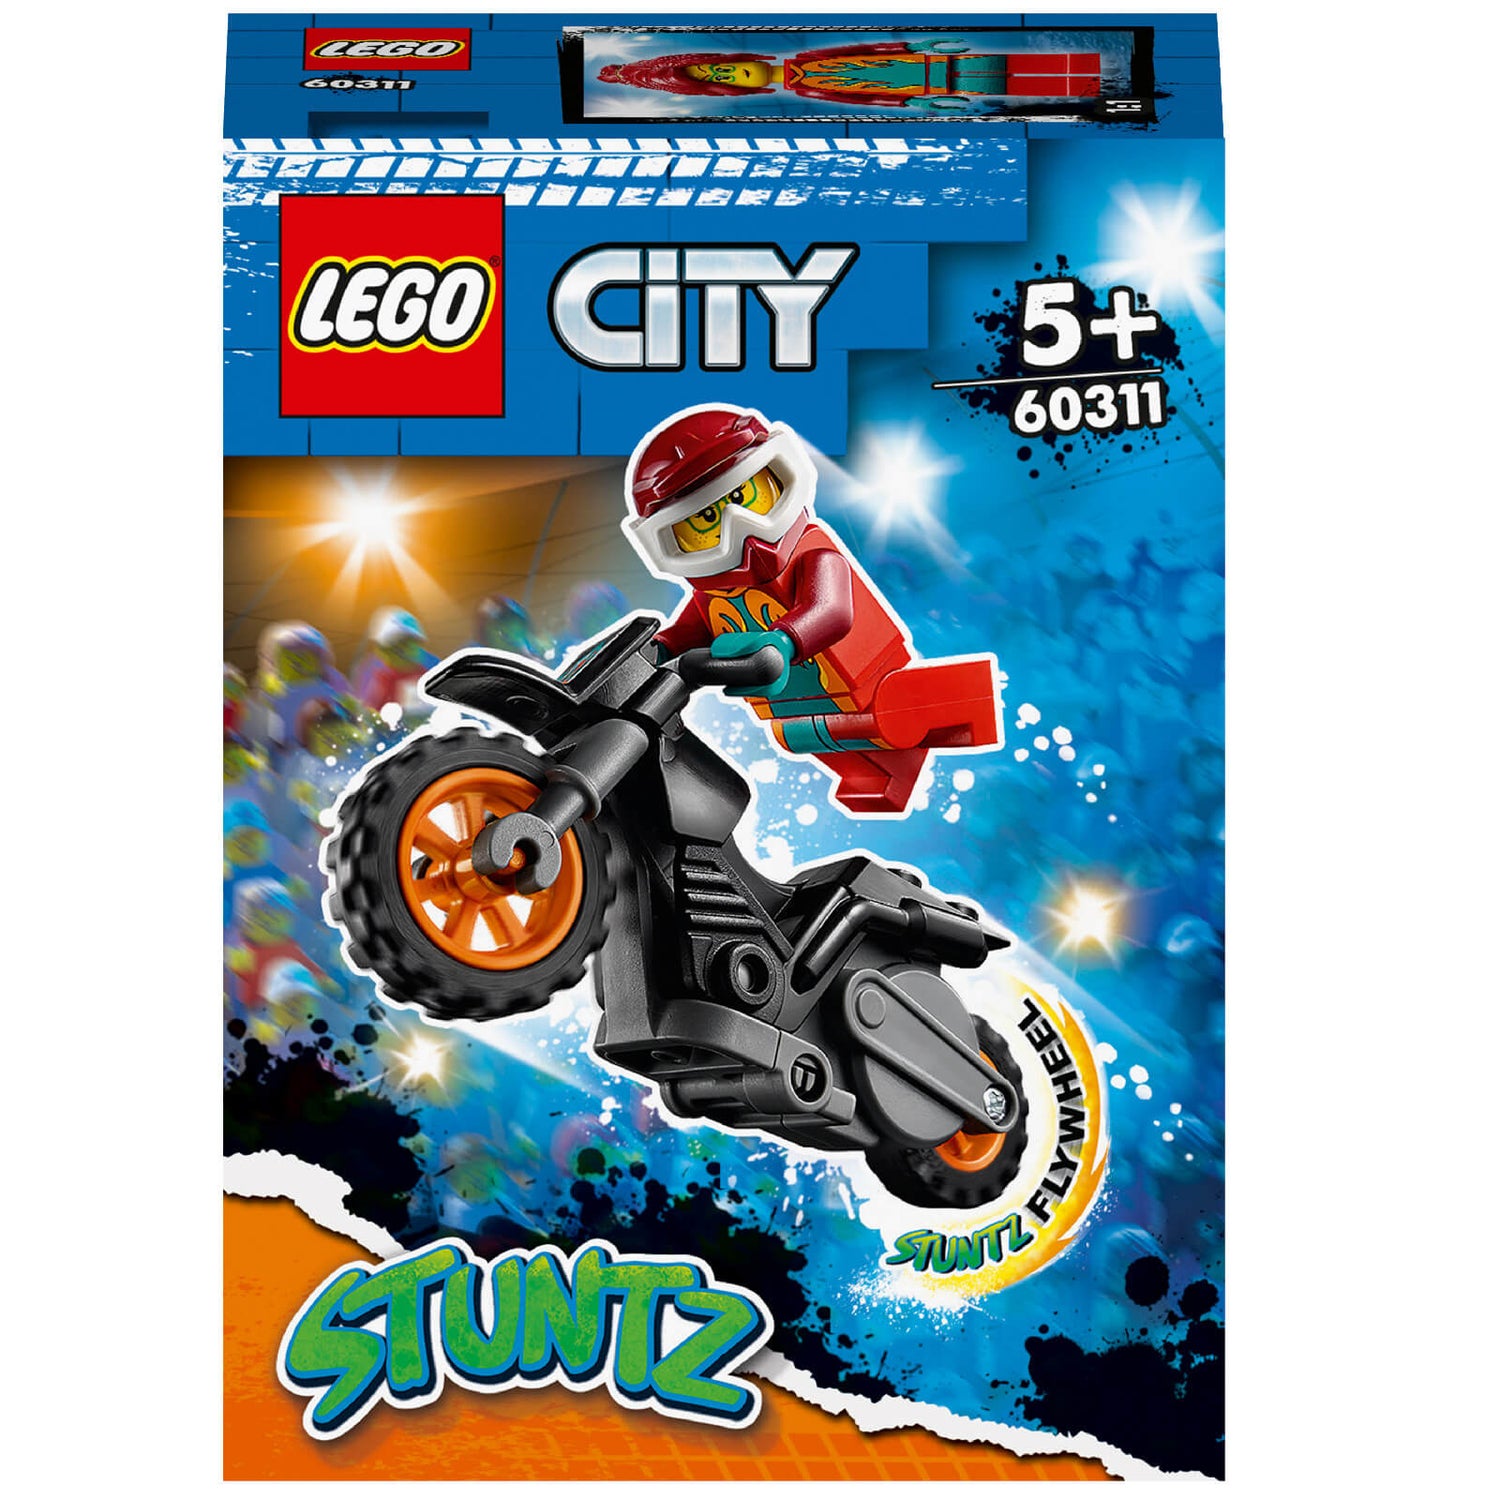 LEGO 60311 City Vuur Stuntmotor Met Vliegwielfunctie, Met Brandweervrouw Racer Minifiguur, Cadeau-Idee Voor Kinderen Van 5+